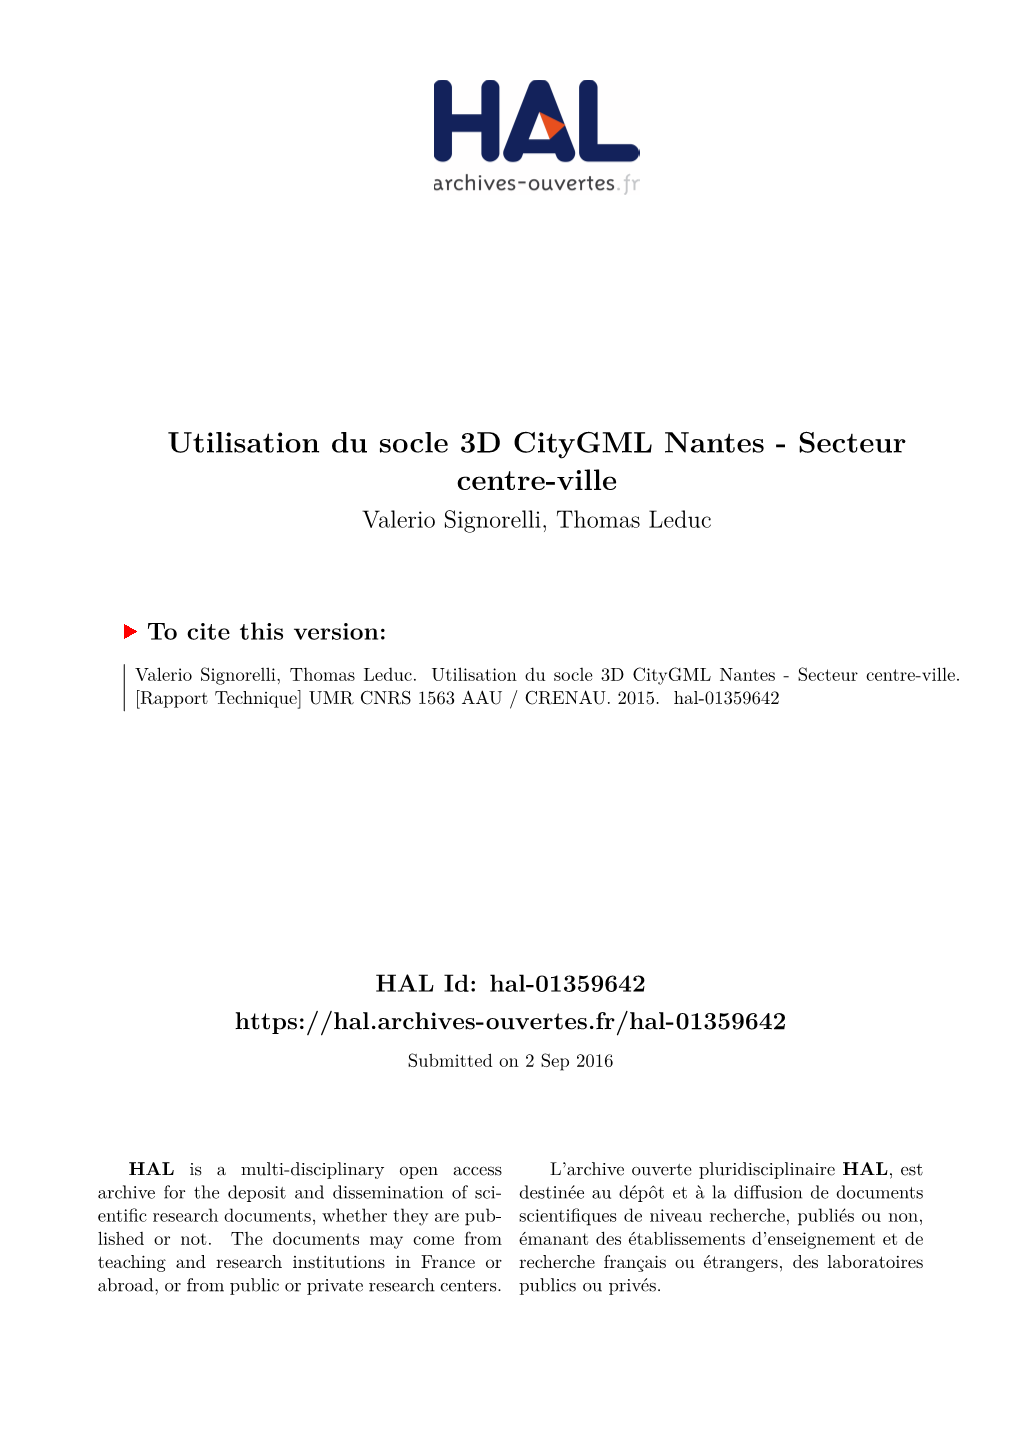 Utilisation Du Socle 3D Citygml Nantes - Secteur Centre-Ville Valerio Signorelli, Thomas Leduc